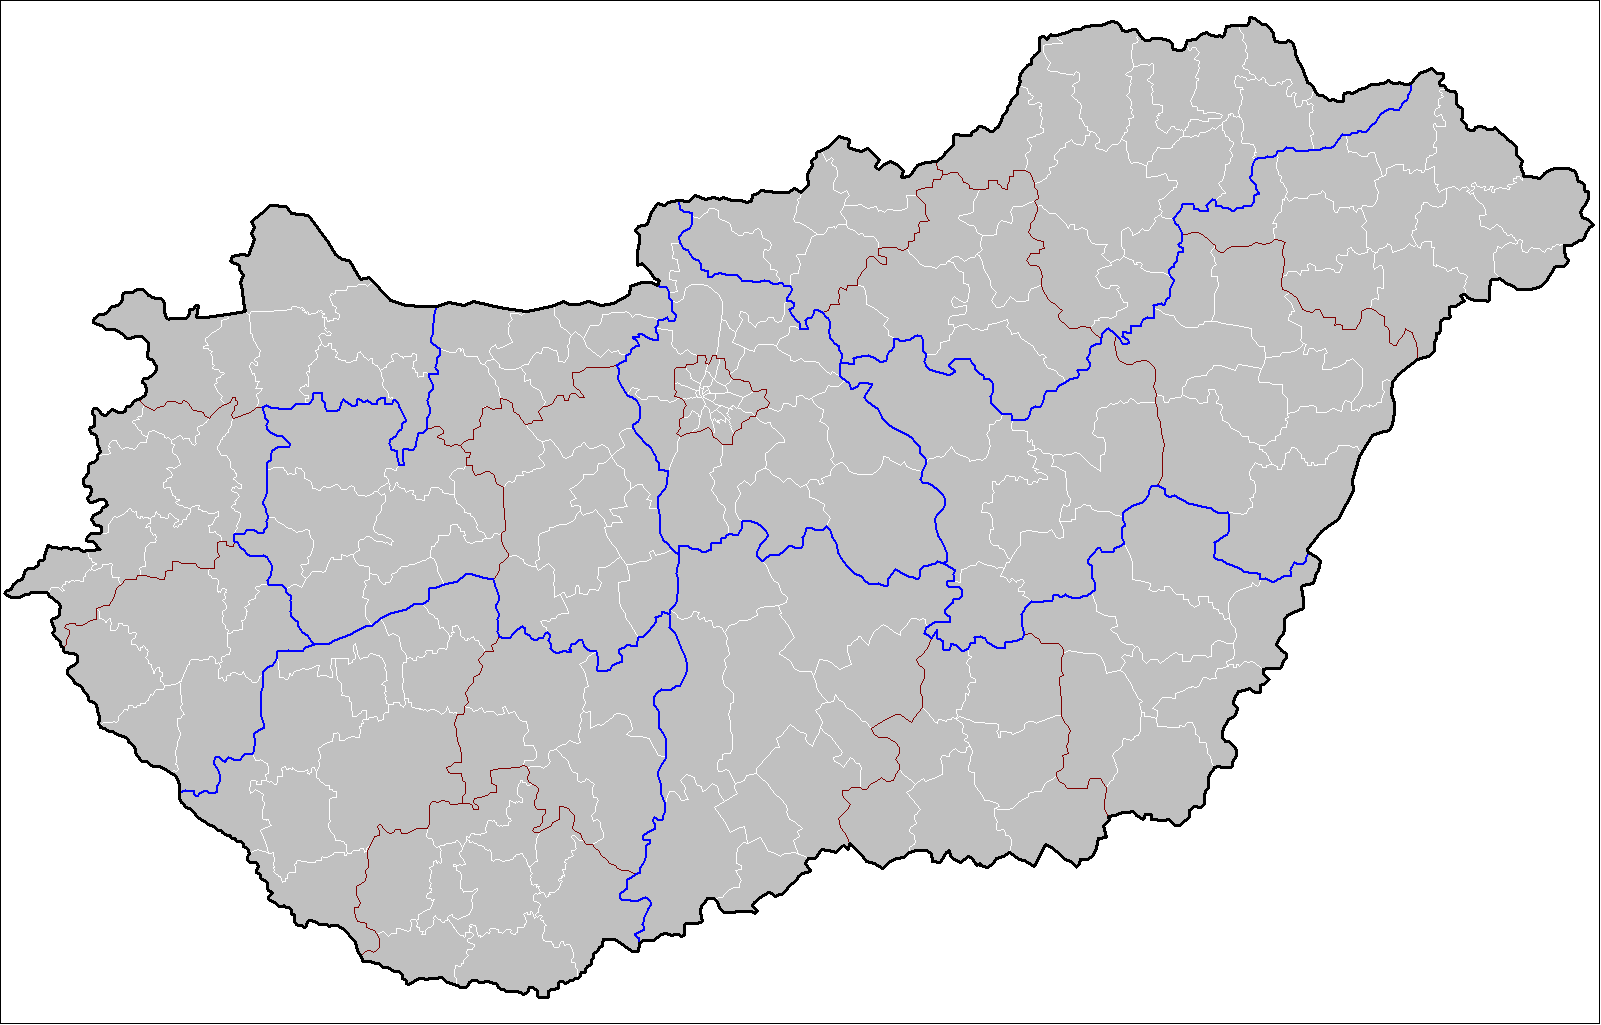 File:Hungary map with Balaton